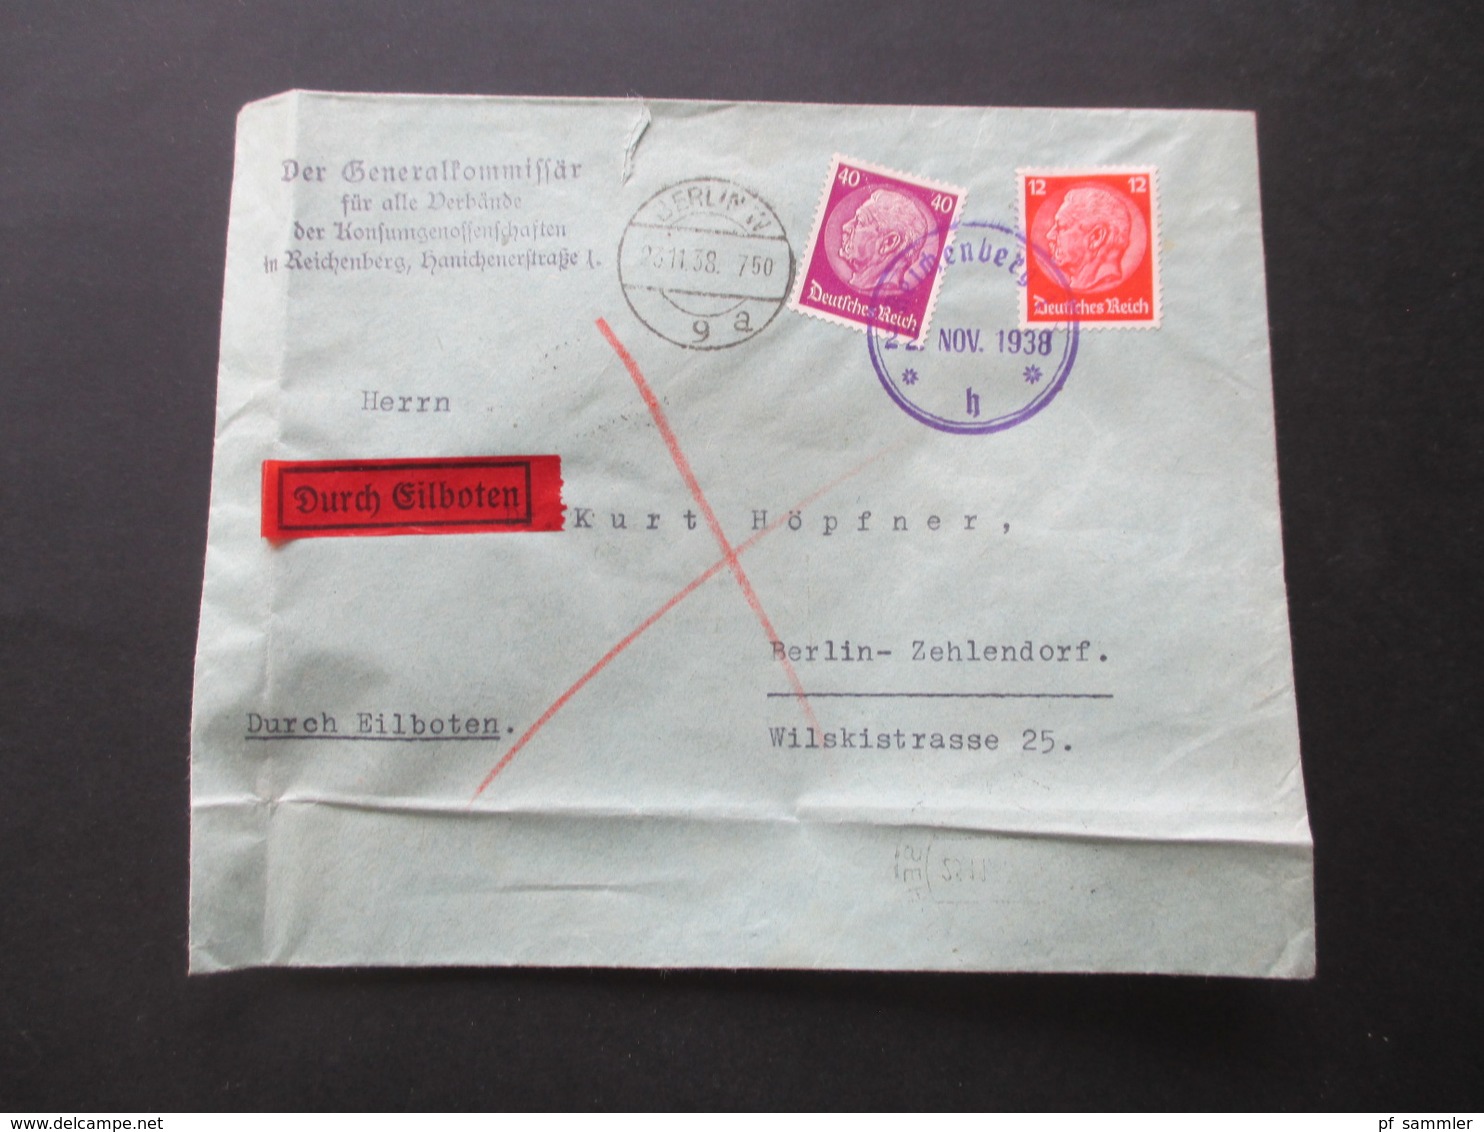 3.Reich / Sudetenland 22.11.1938 Bedarfsbrief Generalkommissär Für Alle Verbände Konsumgenossenschaften In Reichenberg - Sudetes